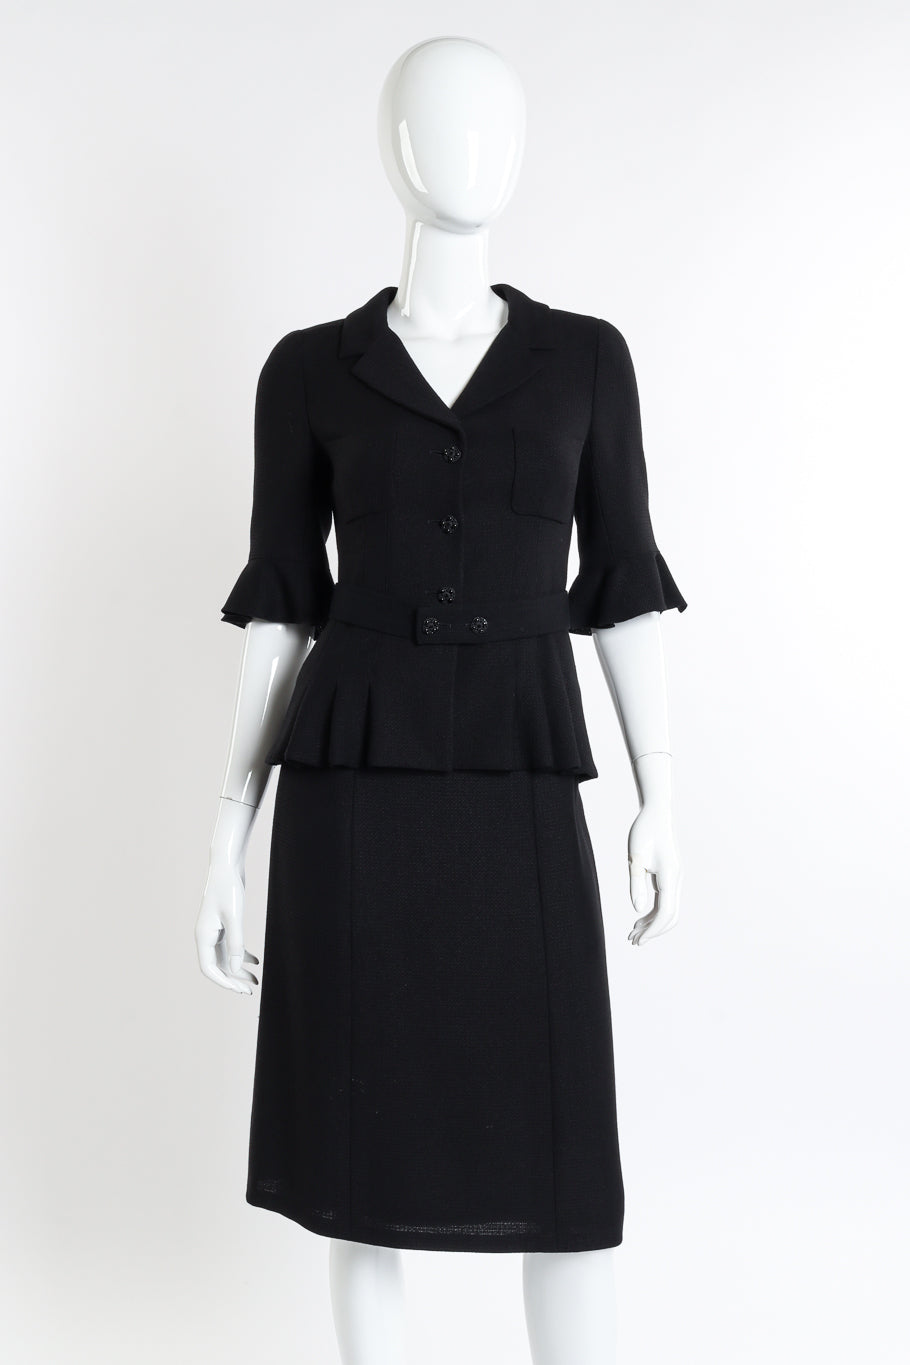 Chanel 2007C S/S Peplum Skirt Suit front on mannequin @recessla